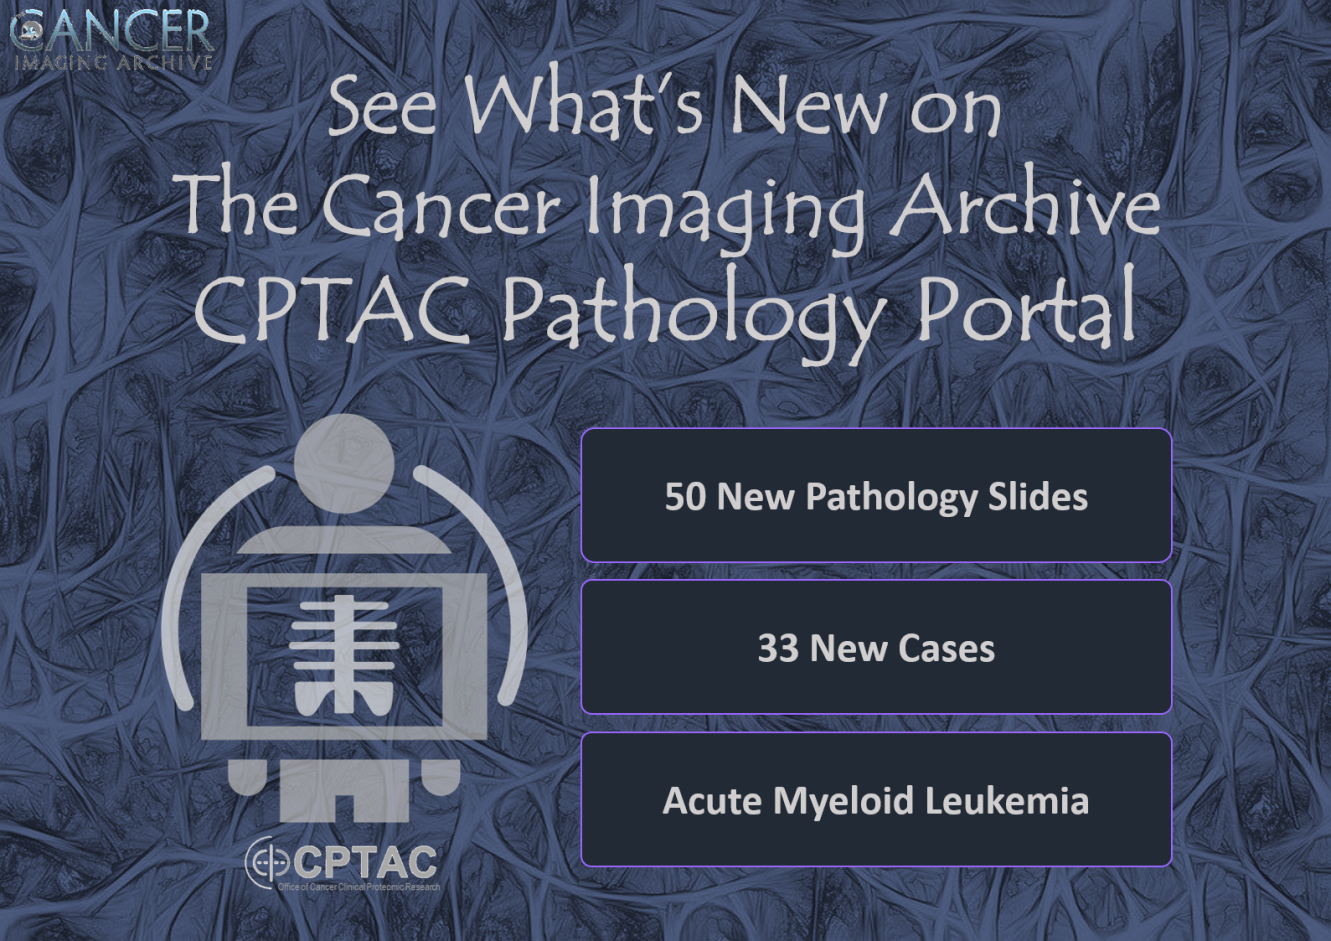 TCIA CPTAC Pathology Image April 2020